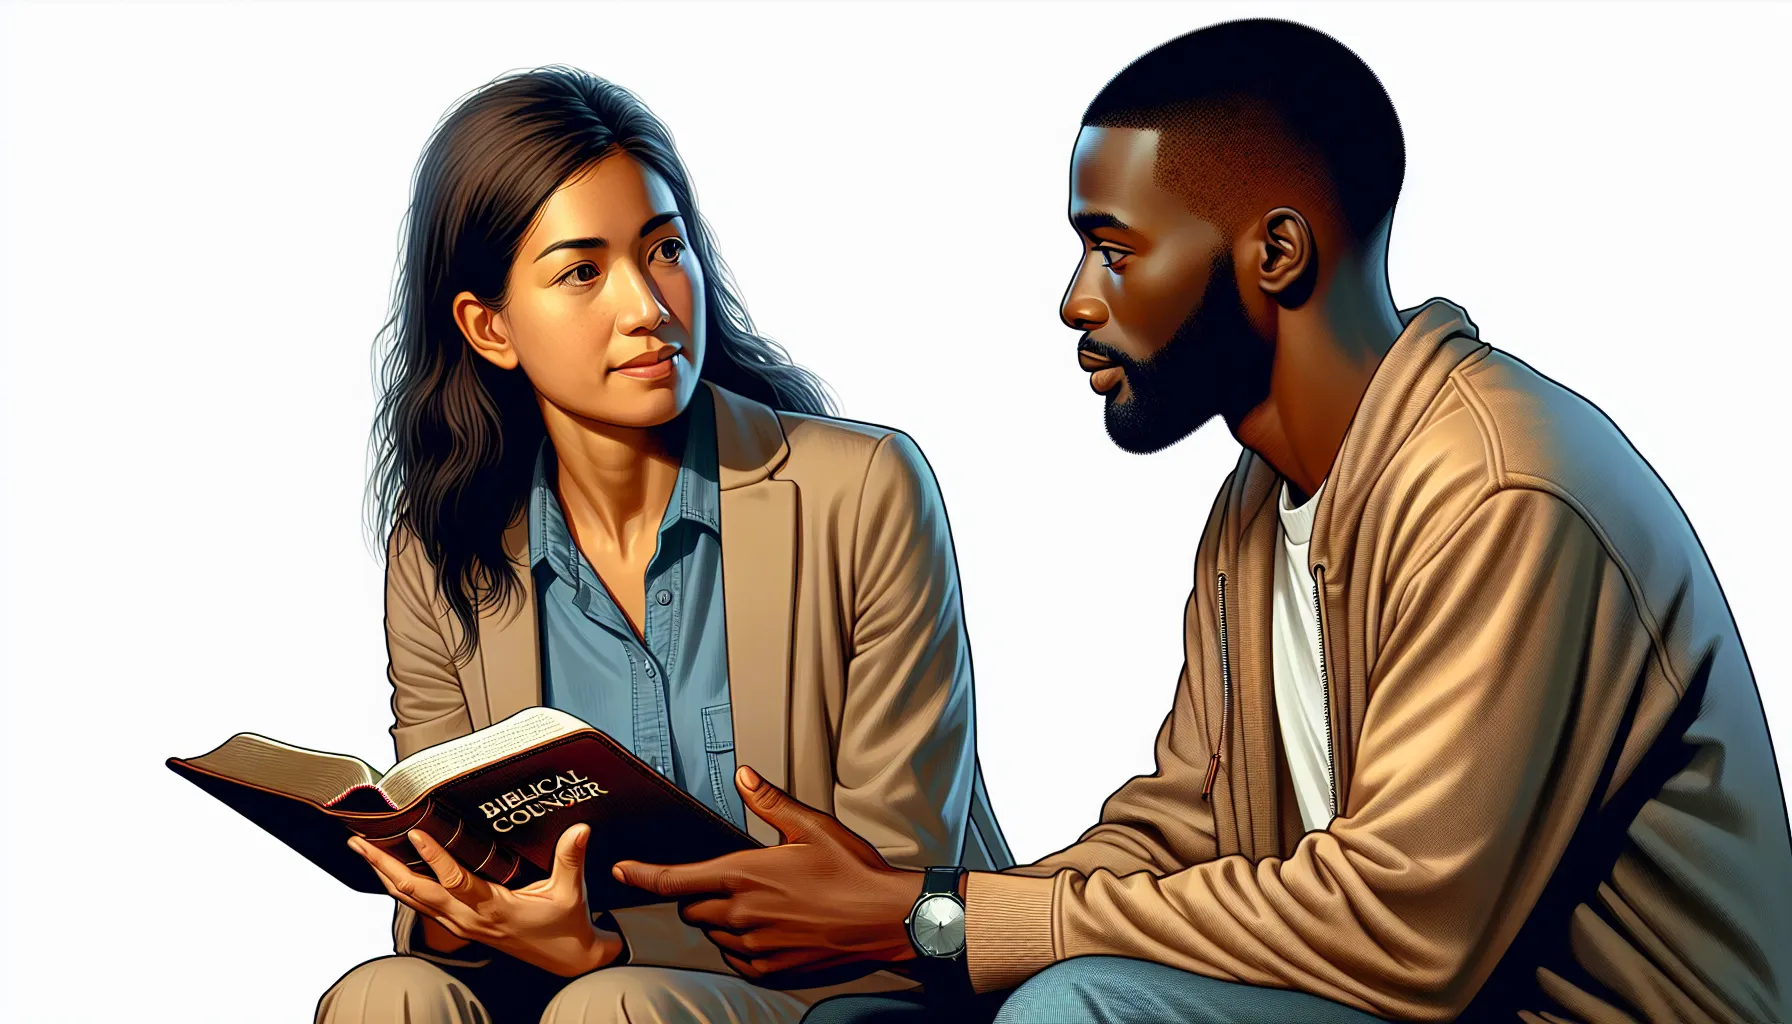 Imagen ilustrativa de un consejero bíblico hablando con una persona mientras ambos sostienen una Biblia abierta.